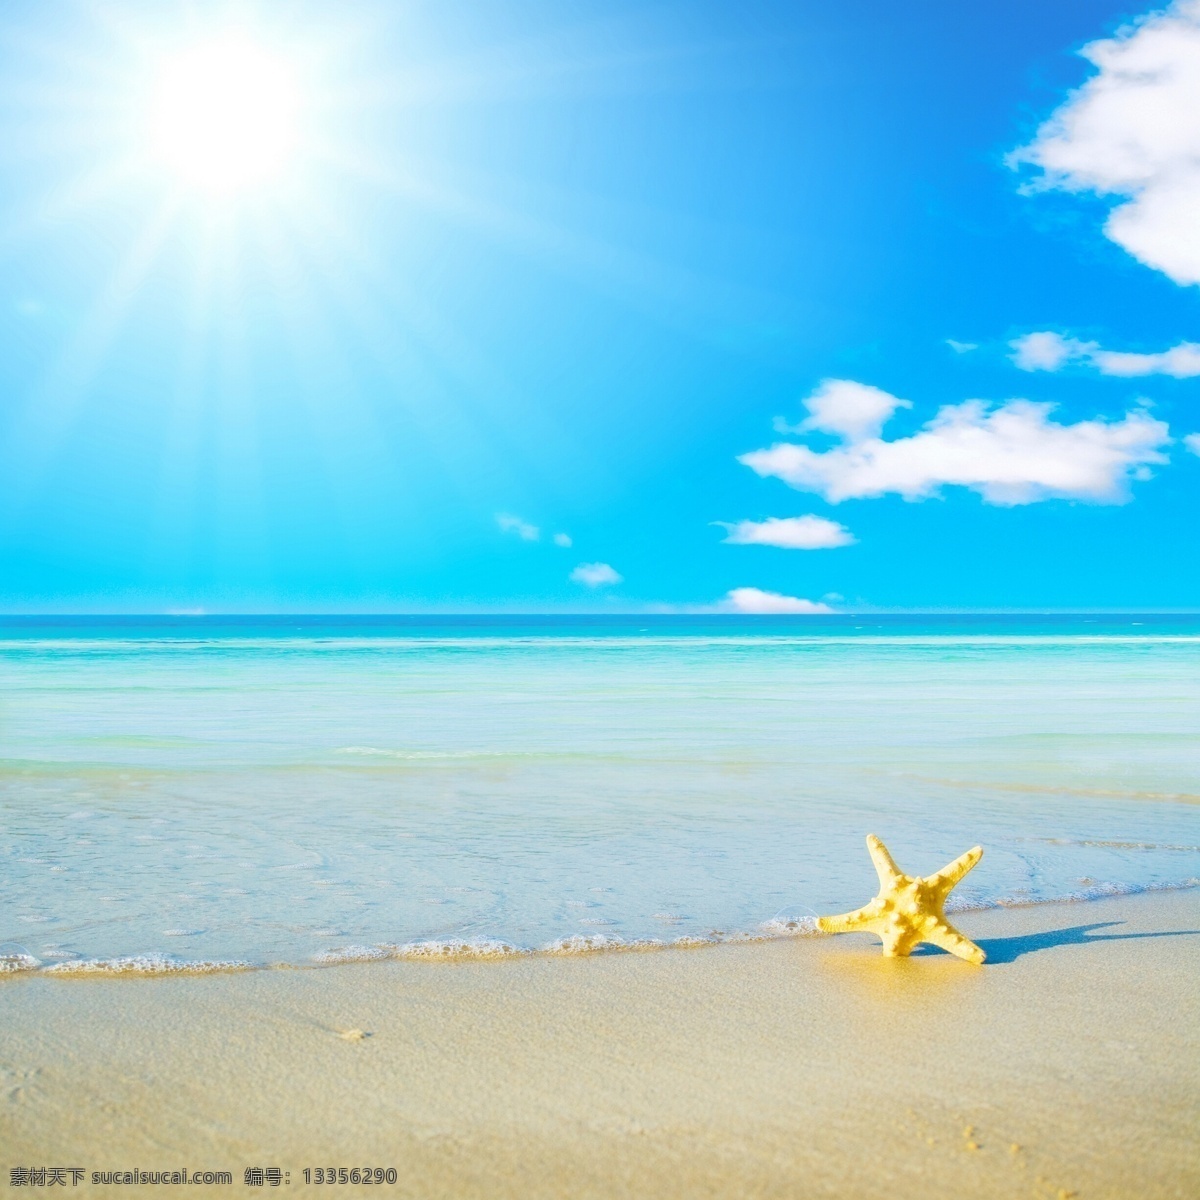 沙滩 海星 素材图片 白云 大海 海水 天空 阳光 自然风光 休闲旅游 热带风光 大海图片 风景图片